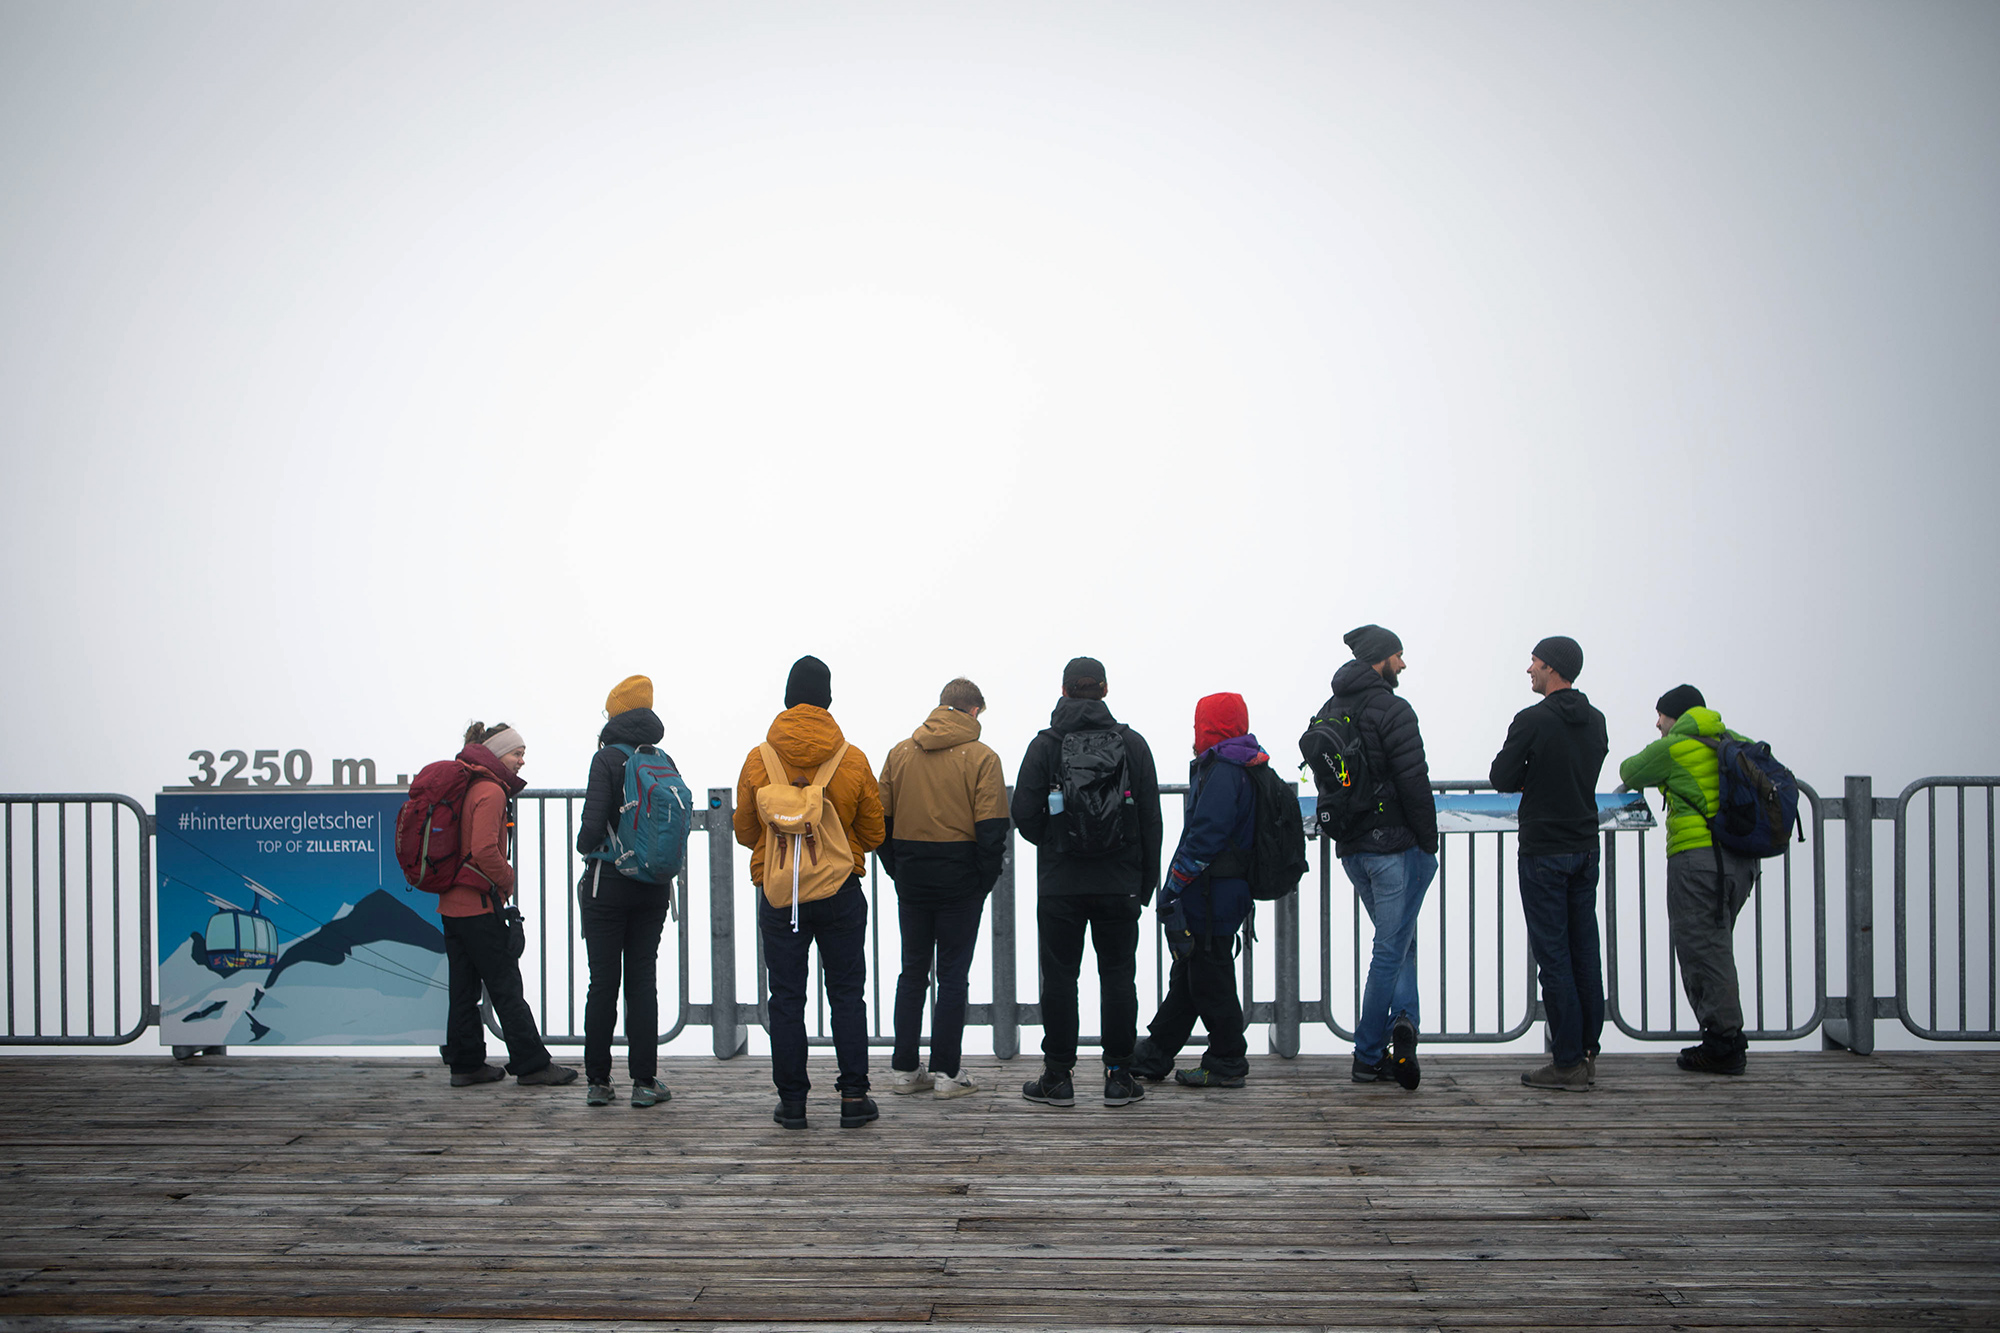 Eine Gruppe Menschen, die man von hinten sieht, steht in Winterkleidung an einem Geländer